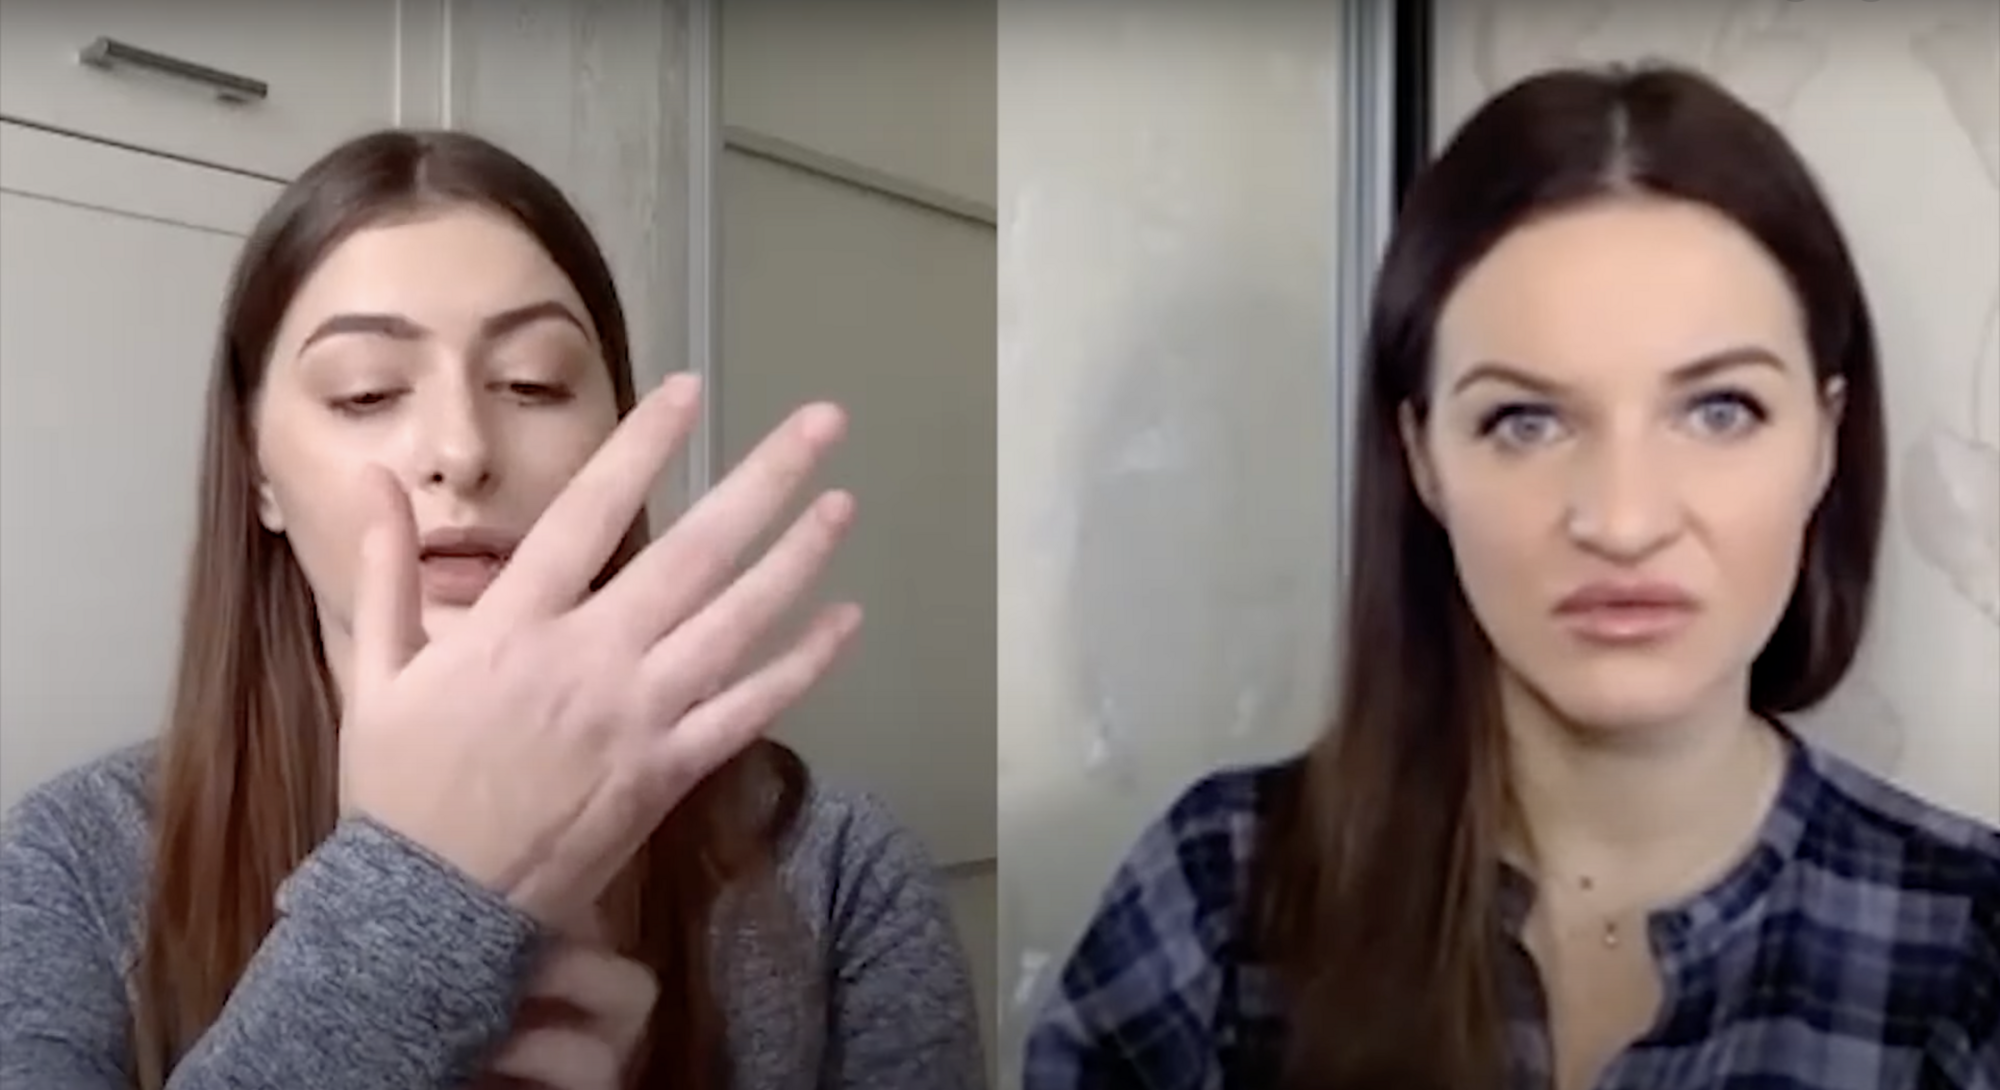 Екатерина Тышкевич впервые показала руку, которую заразили в психбольнице стафилококком, и объяснила, почему не будет подавать в суд